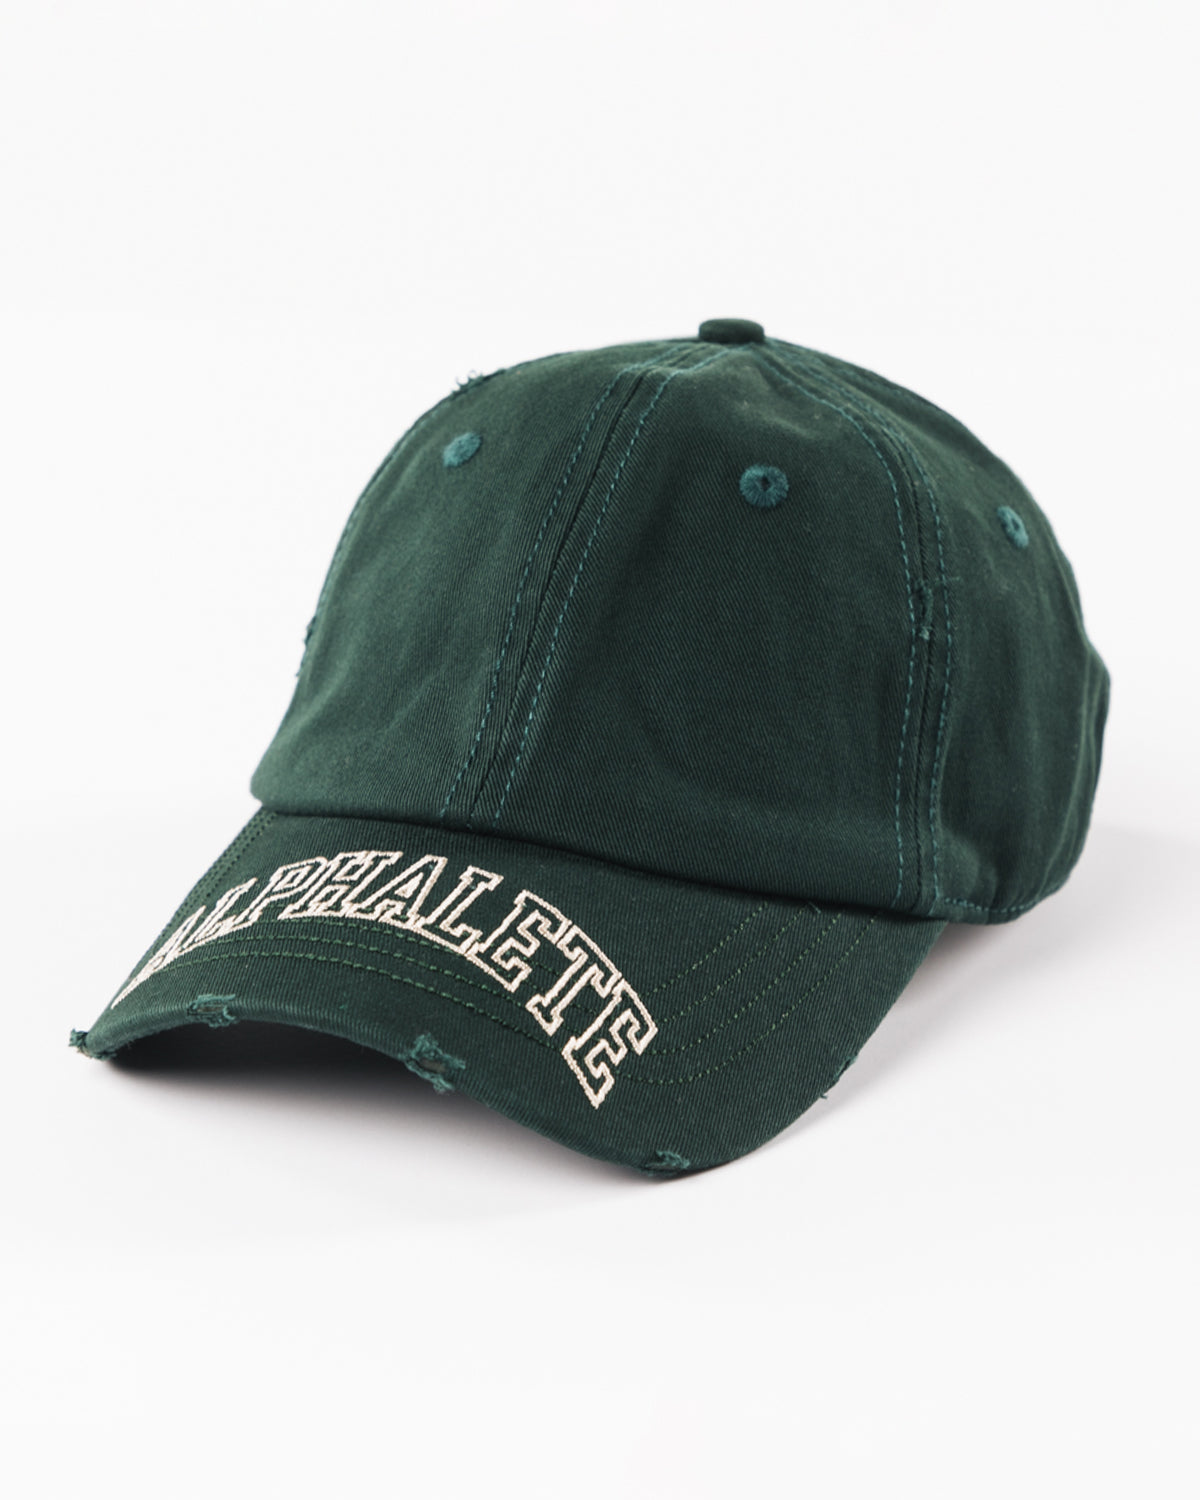 Collegiate Vintage Cap - Evergreen – Alphalete Athletics